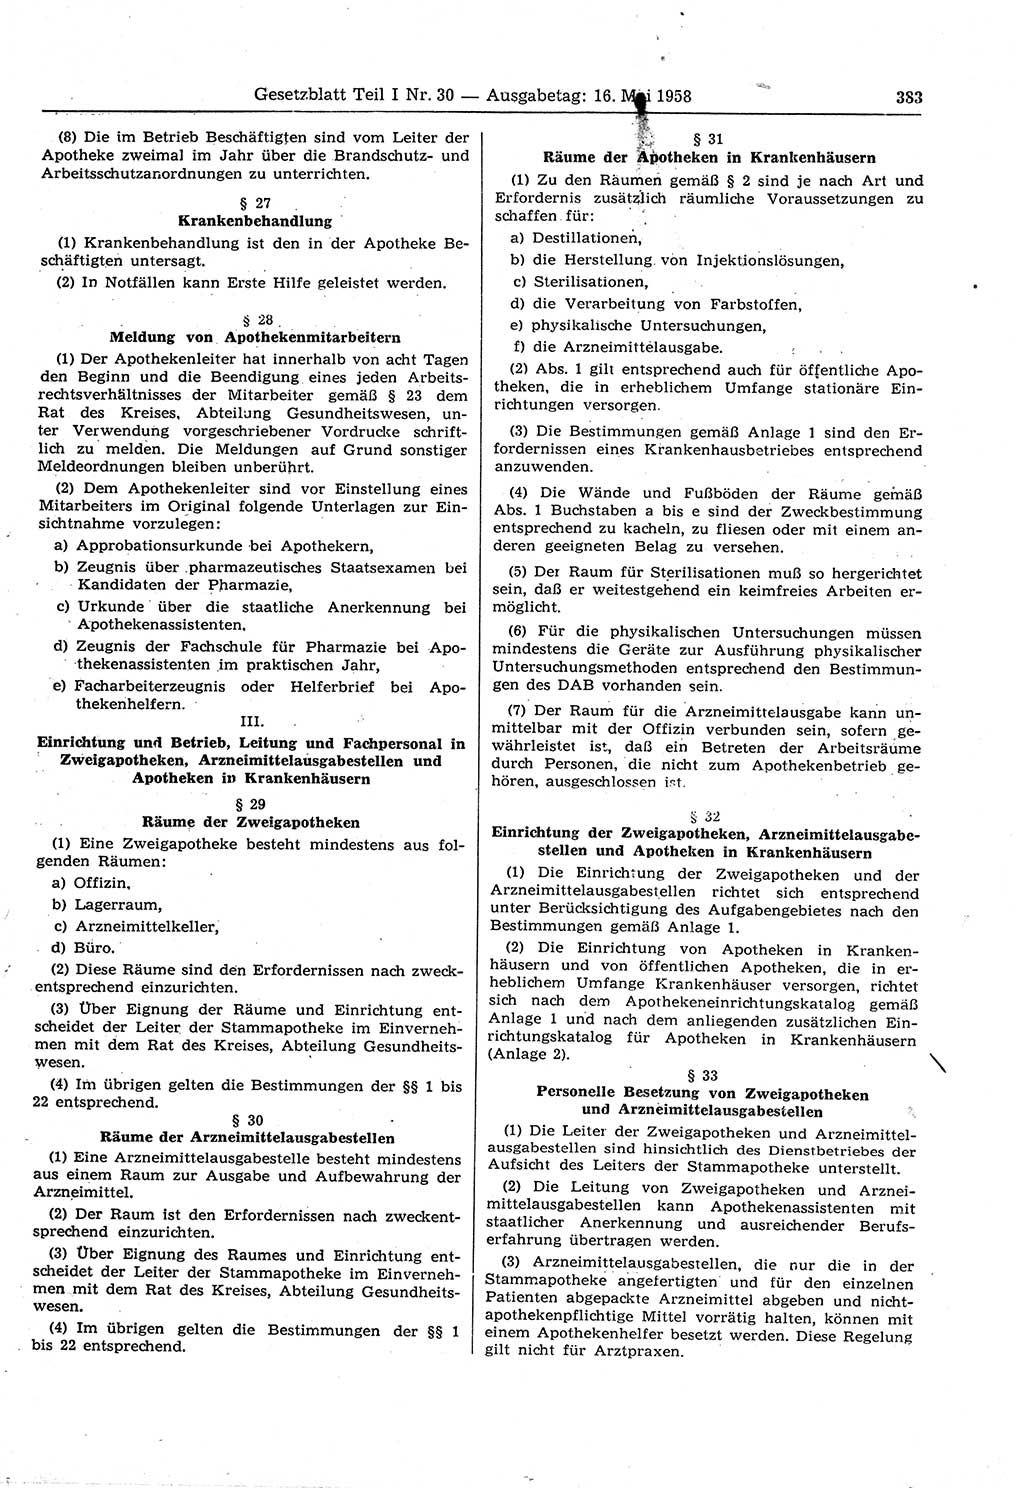 Gesetzblatt (GBl.) der Deutschen Demokratischen Republik (DDR) Teil Ⅰ 1958, Seite 383 (GBl. DDR Ⅰ 1958, S. 383)